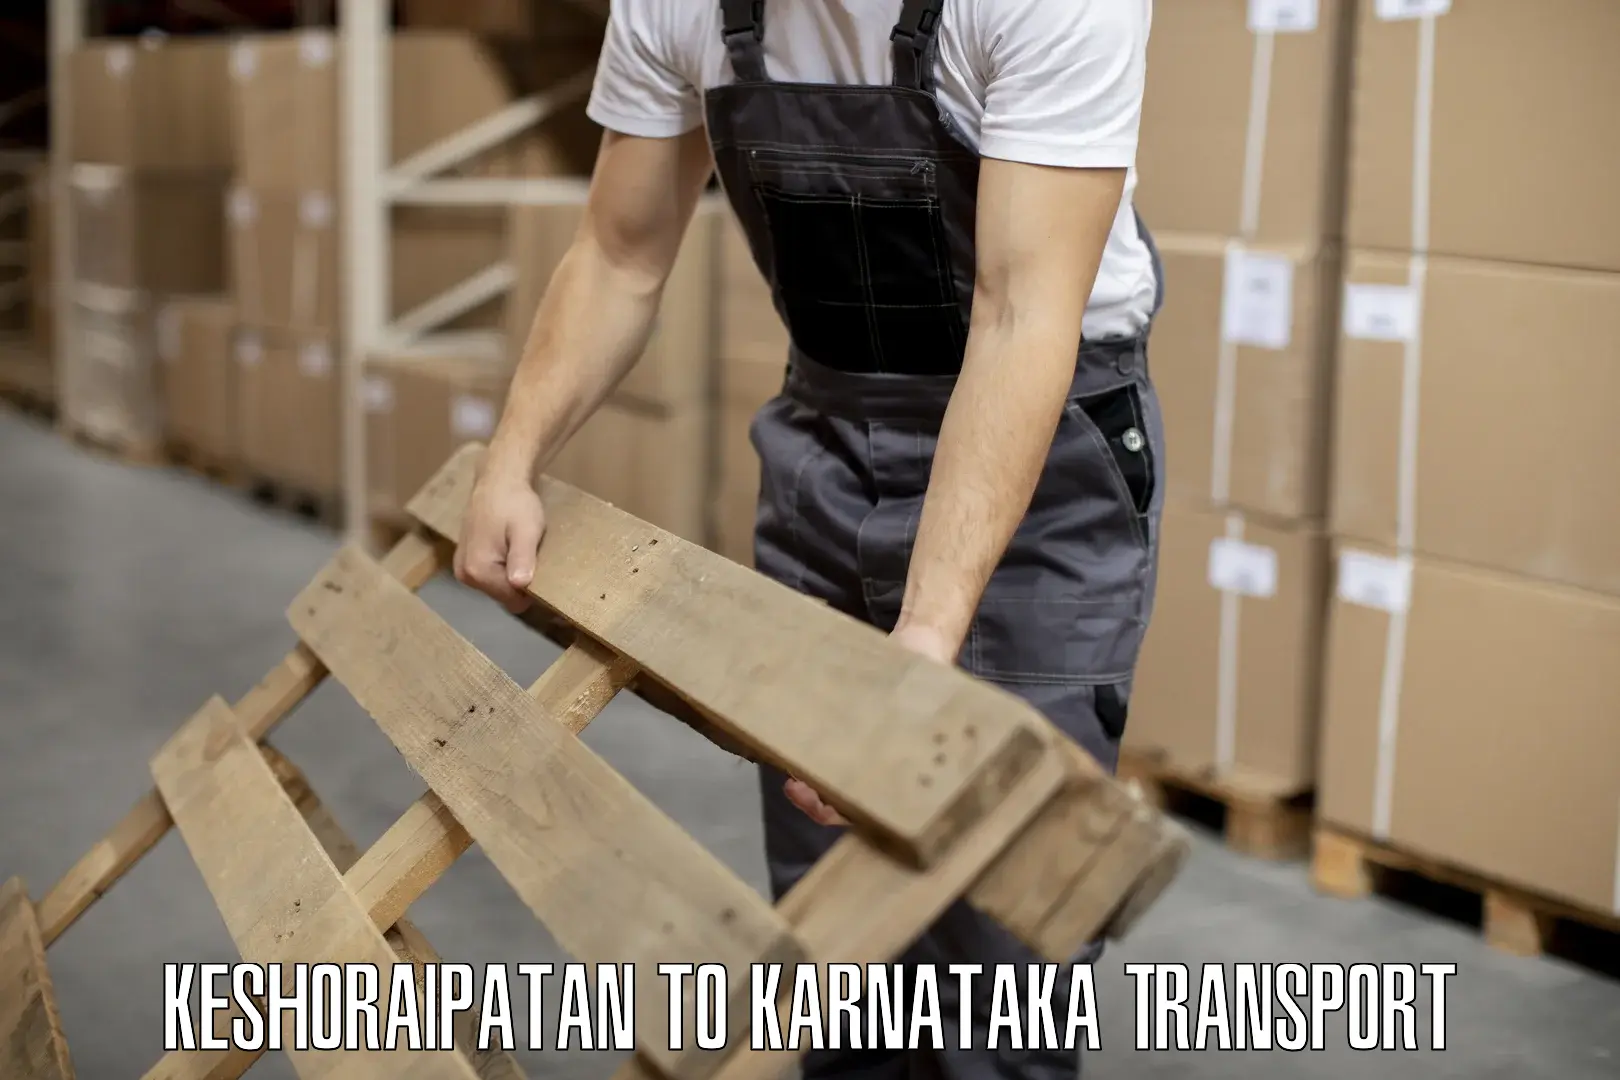 Road transport online services Keshoraipatan to Karnataka